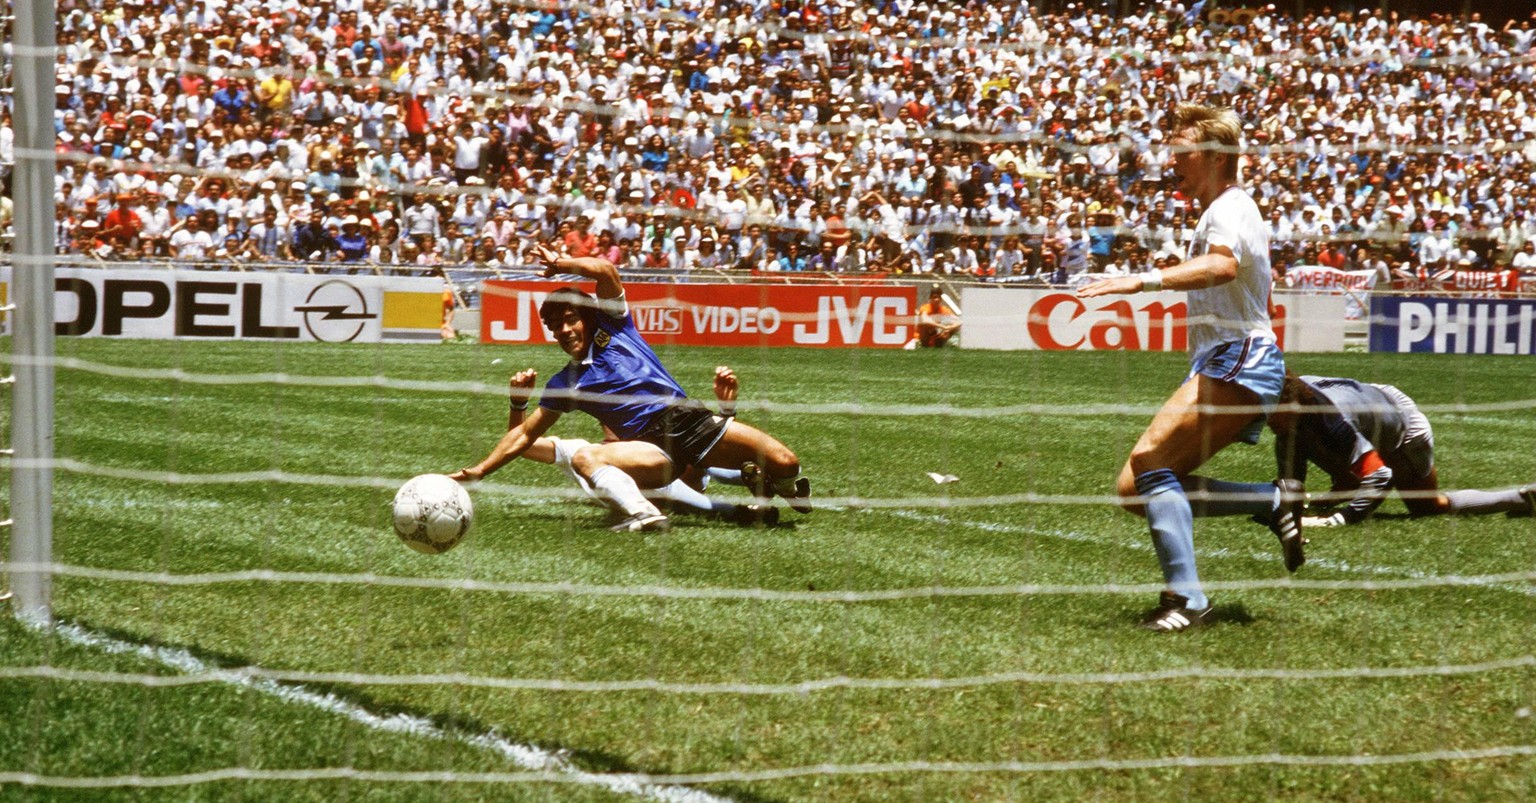 Bildnummer: 01037630 Datum: 22.06.1986 Copyright: imago/Sven Simon
Diego Armando Maradona (li., Argentinien) besorgt nach einem Sololauf